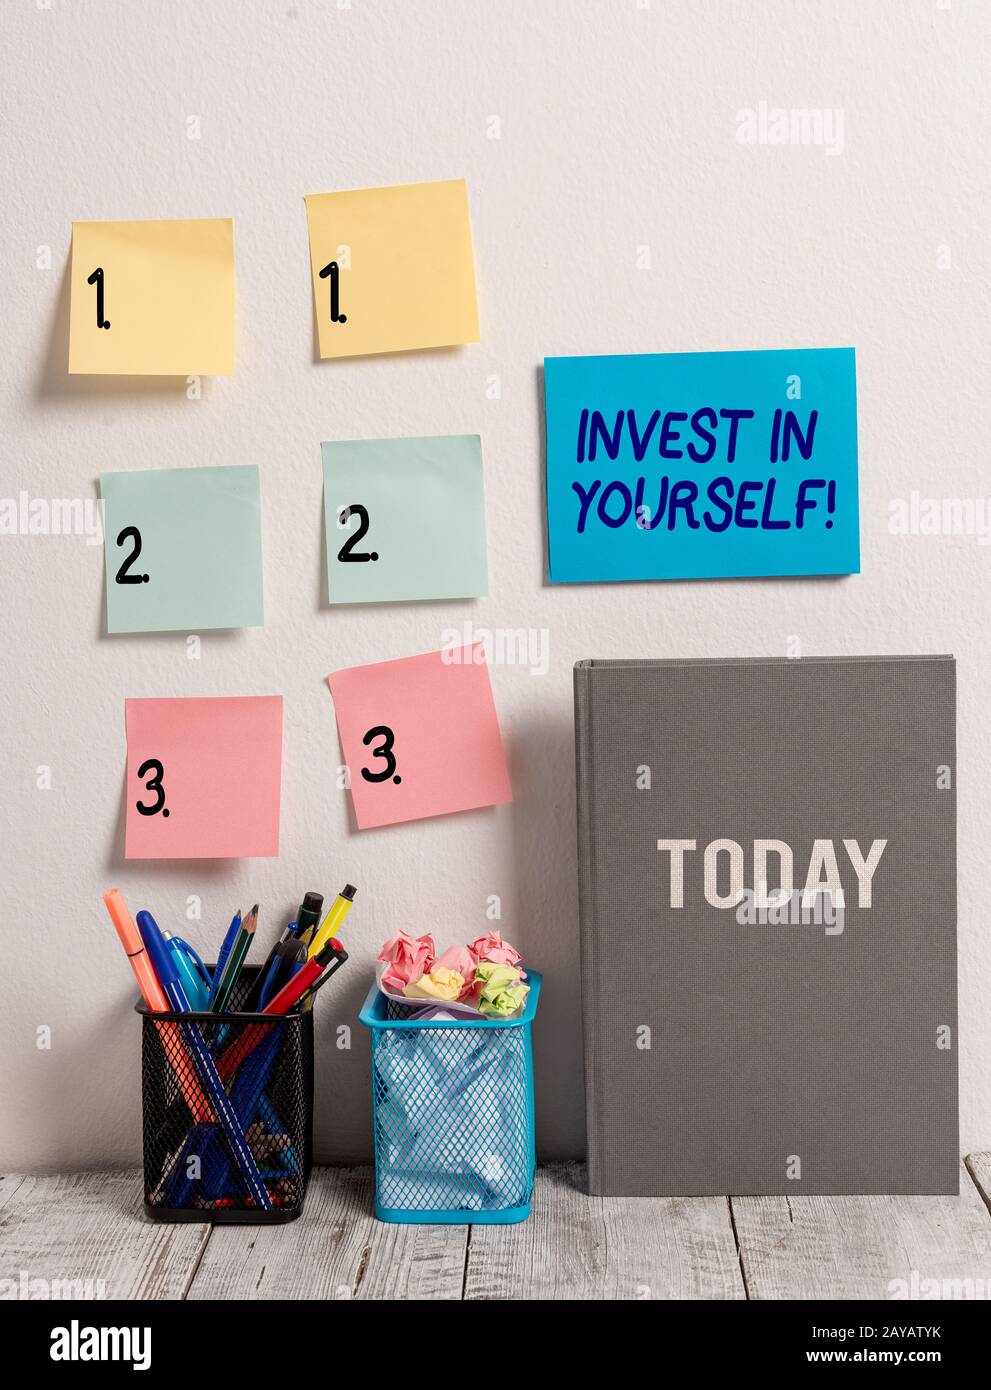 Cartello con la scritta Invest in Yourself. Foto concettuale imparare nuove cose o materiali rendendo così il vostro lotto migliore. Foto Stock